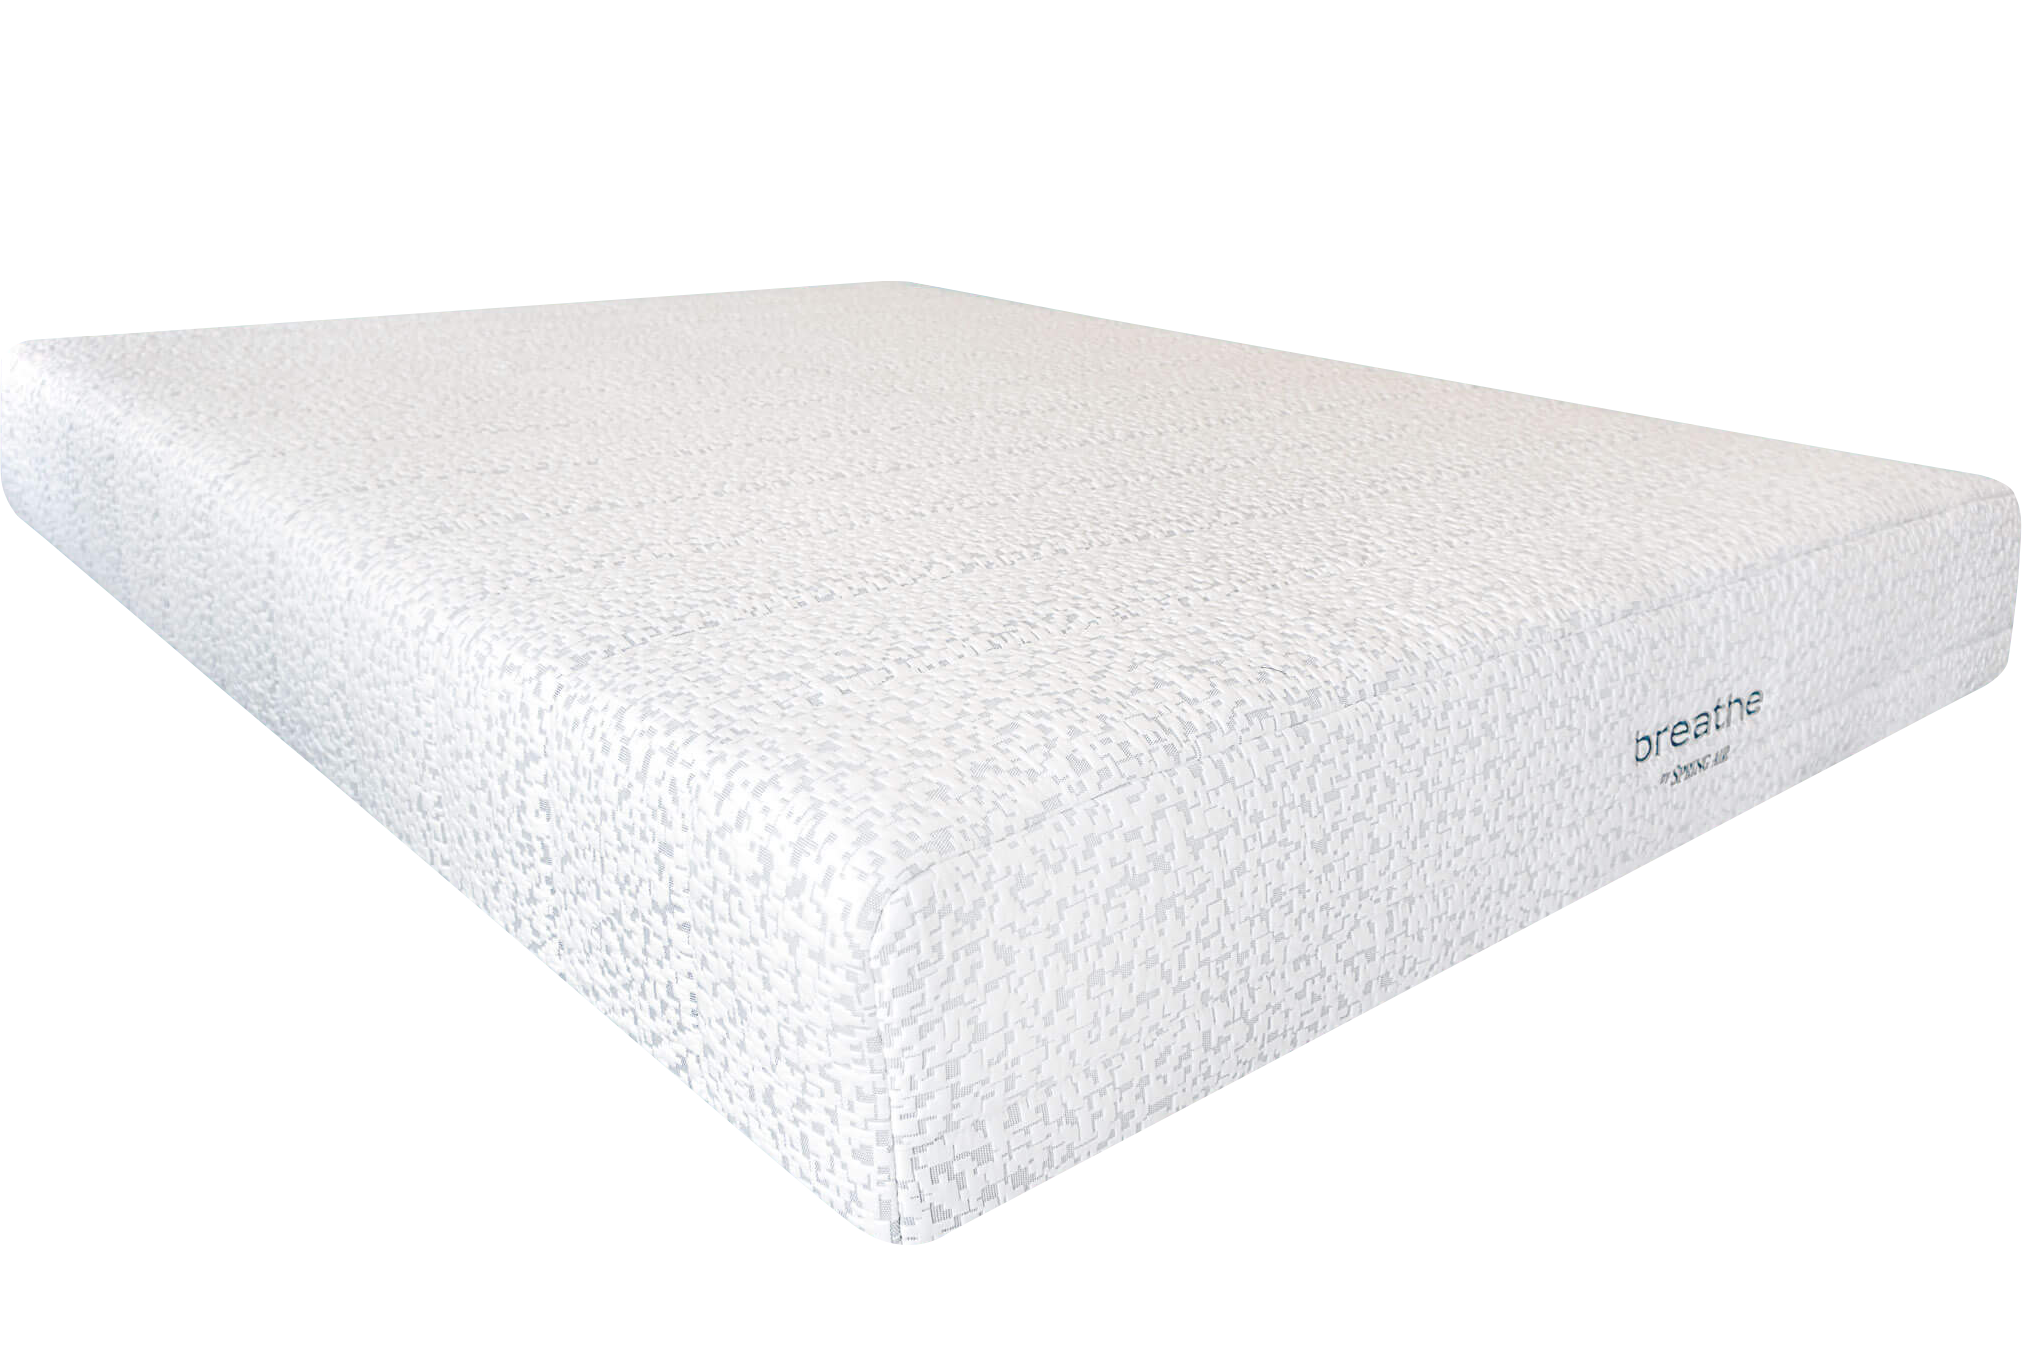 memory foam mattress makes me dizzy